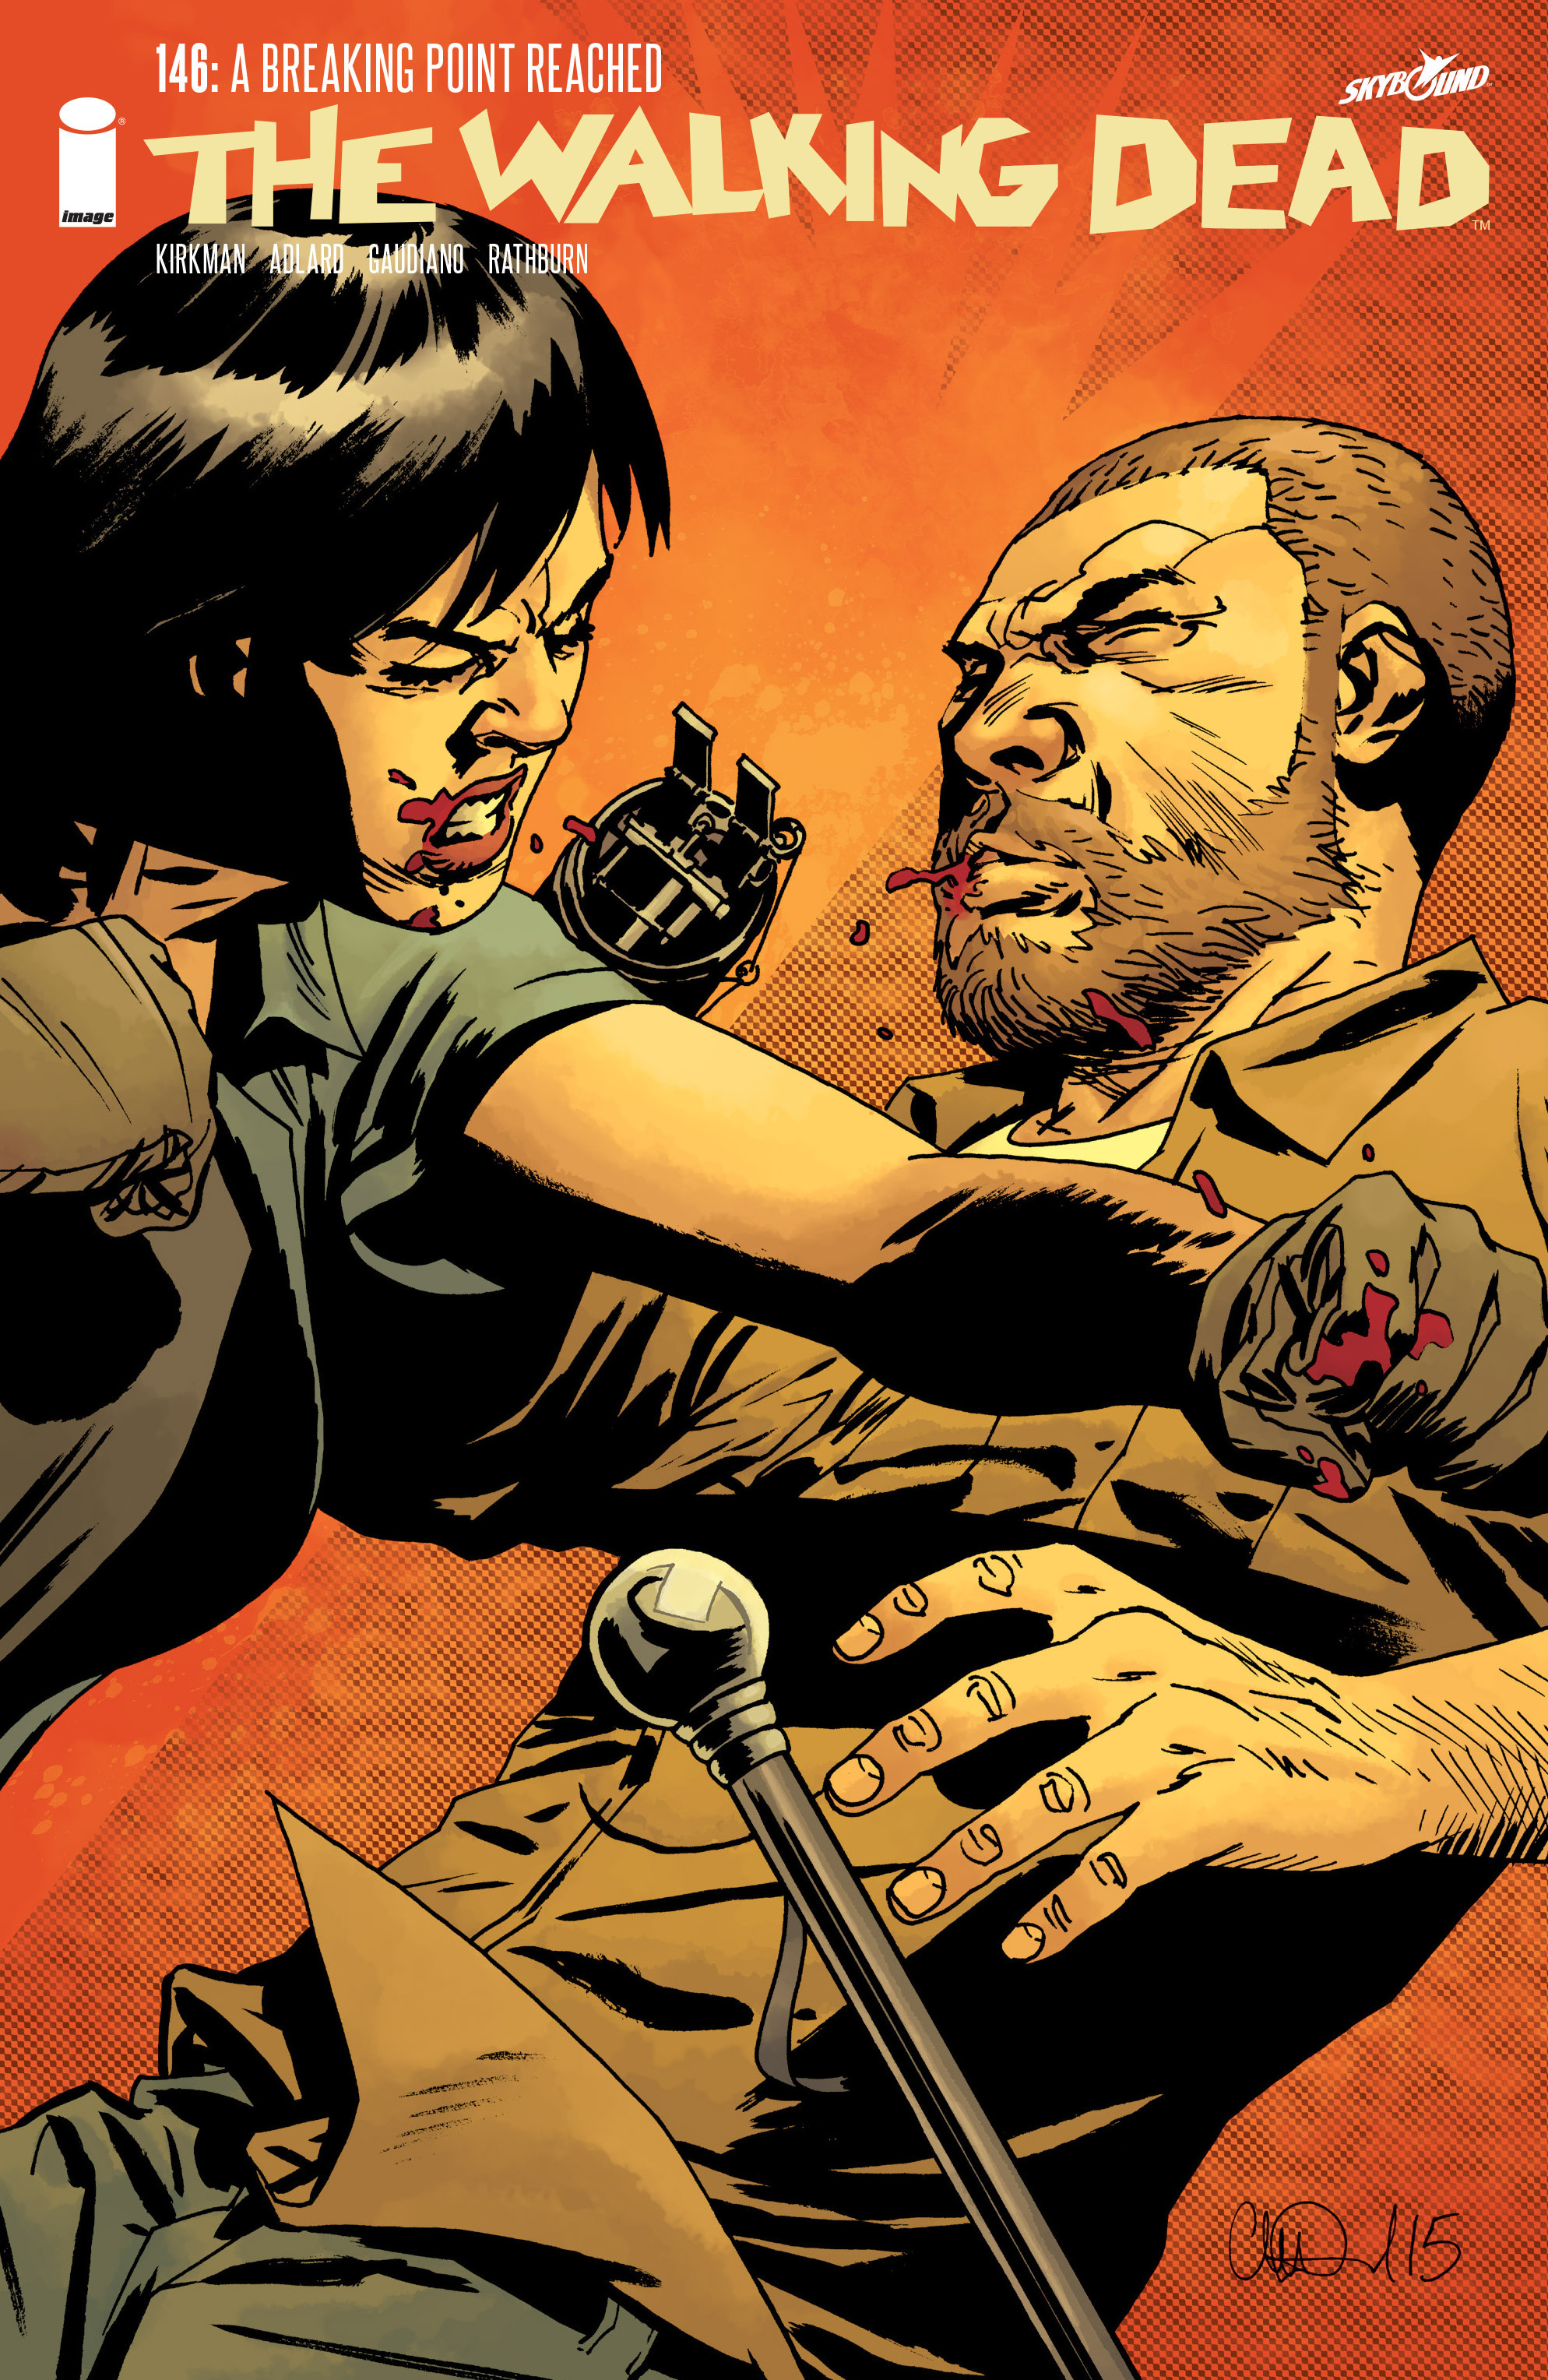 Read online The Walking Dead comic -  Issue #146 - 1